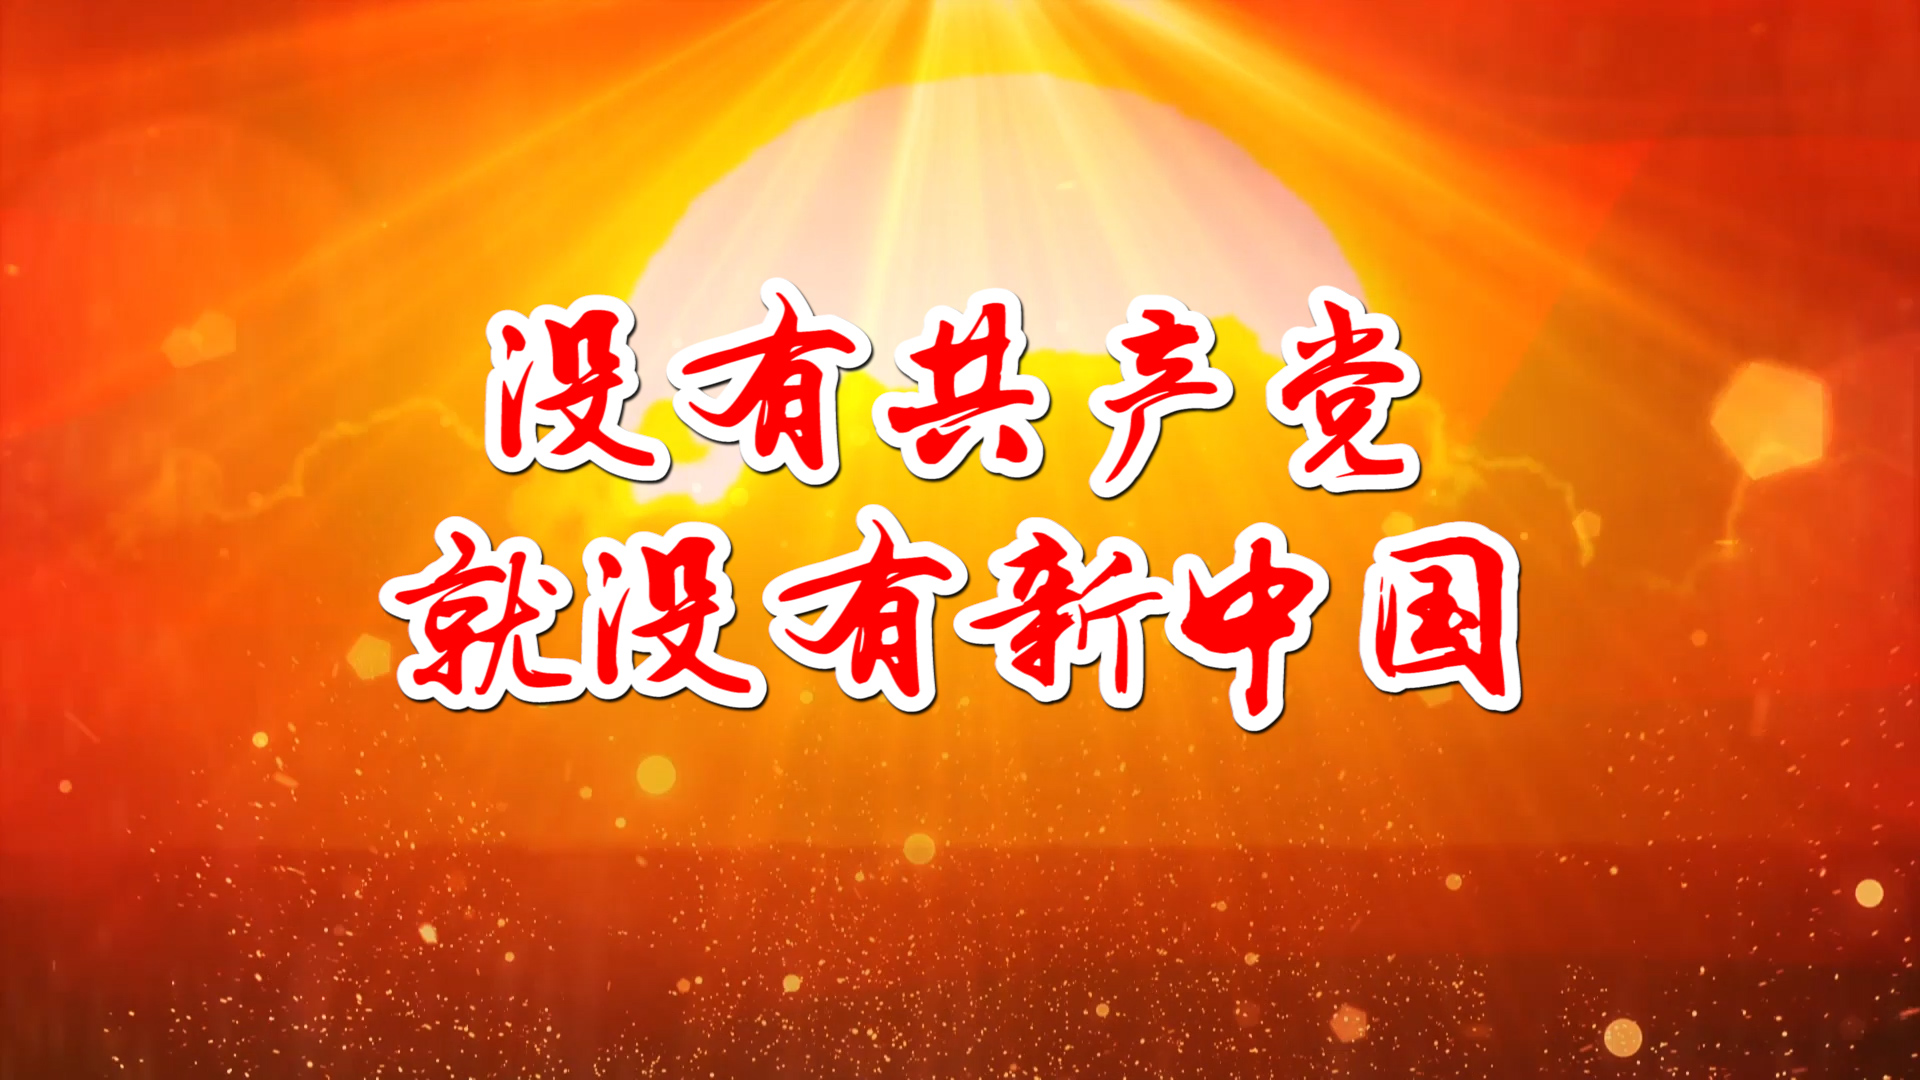 没有共产党就没有新中国 合唱MV字幕配乐伴奏LED背景大屏幕视频素材TV